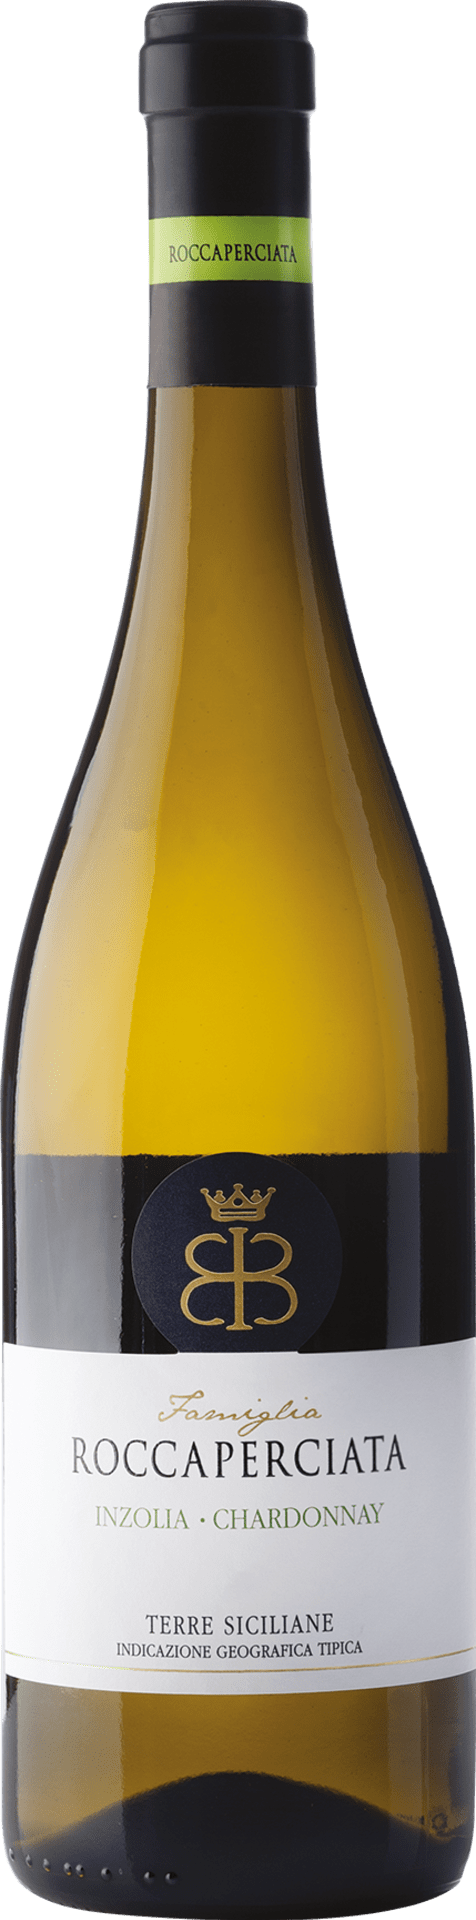 Roccaperciata Inzolia - Chardonnay IGT Terre Siciliane